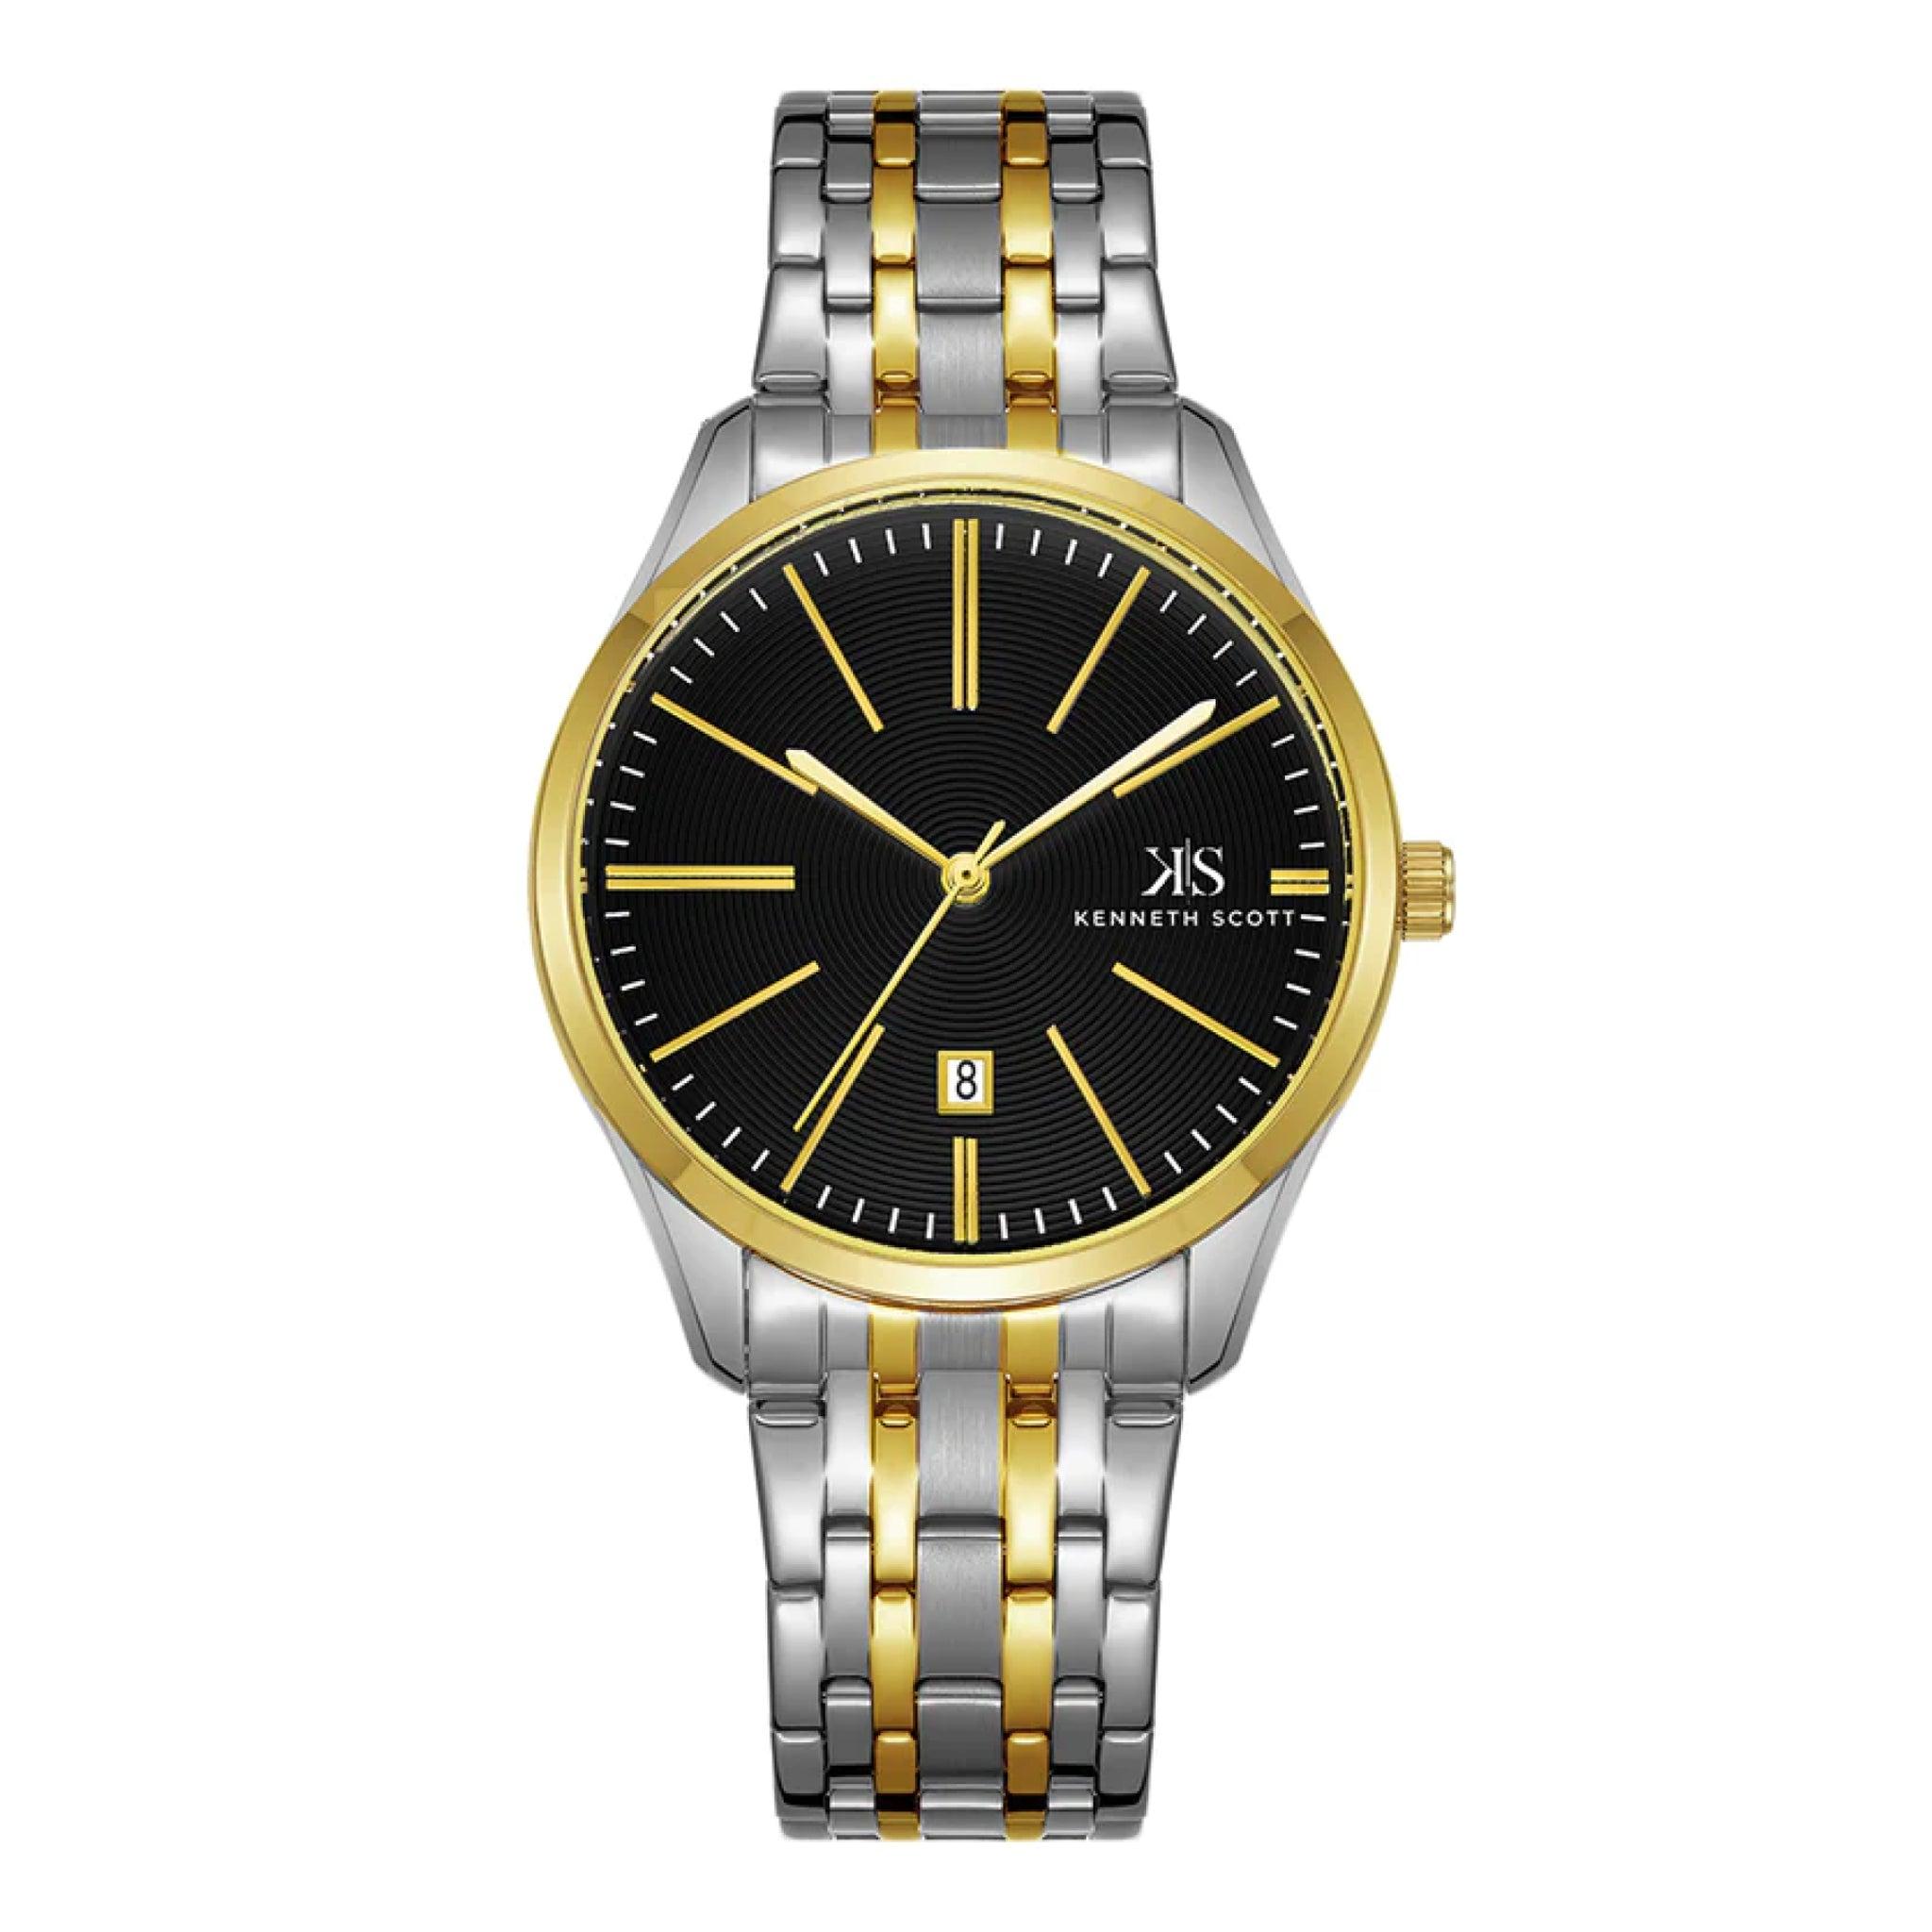 ساعة يد تناظرية رجالية - فضي و ذهبي - كينيث سكوت Kenneth Scott Men's Analog Watch - K22015-Tbtb